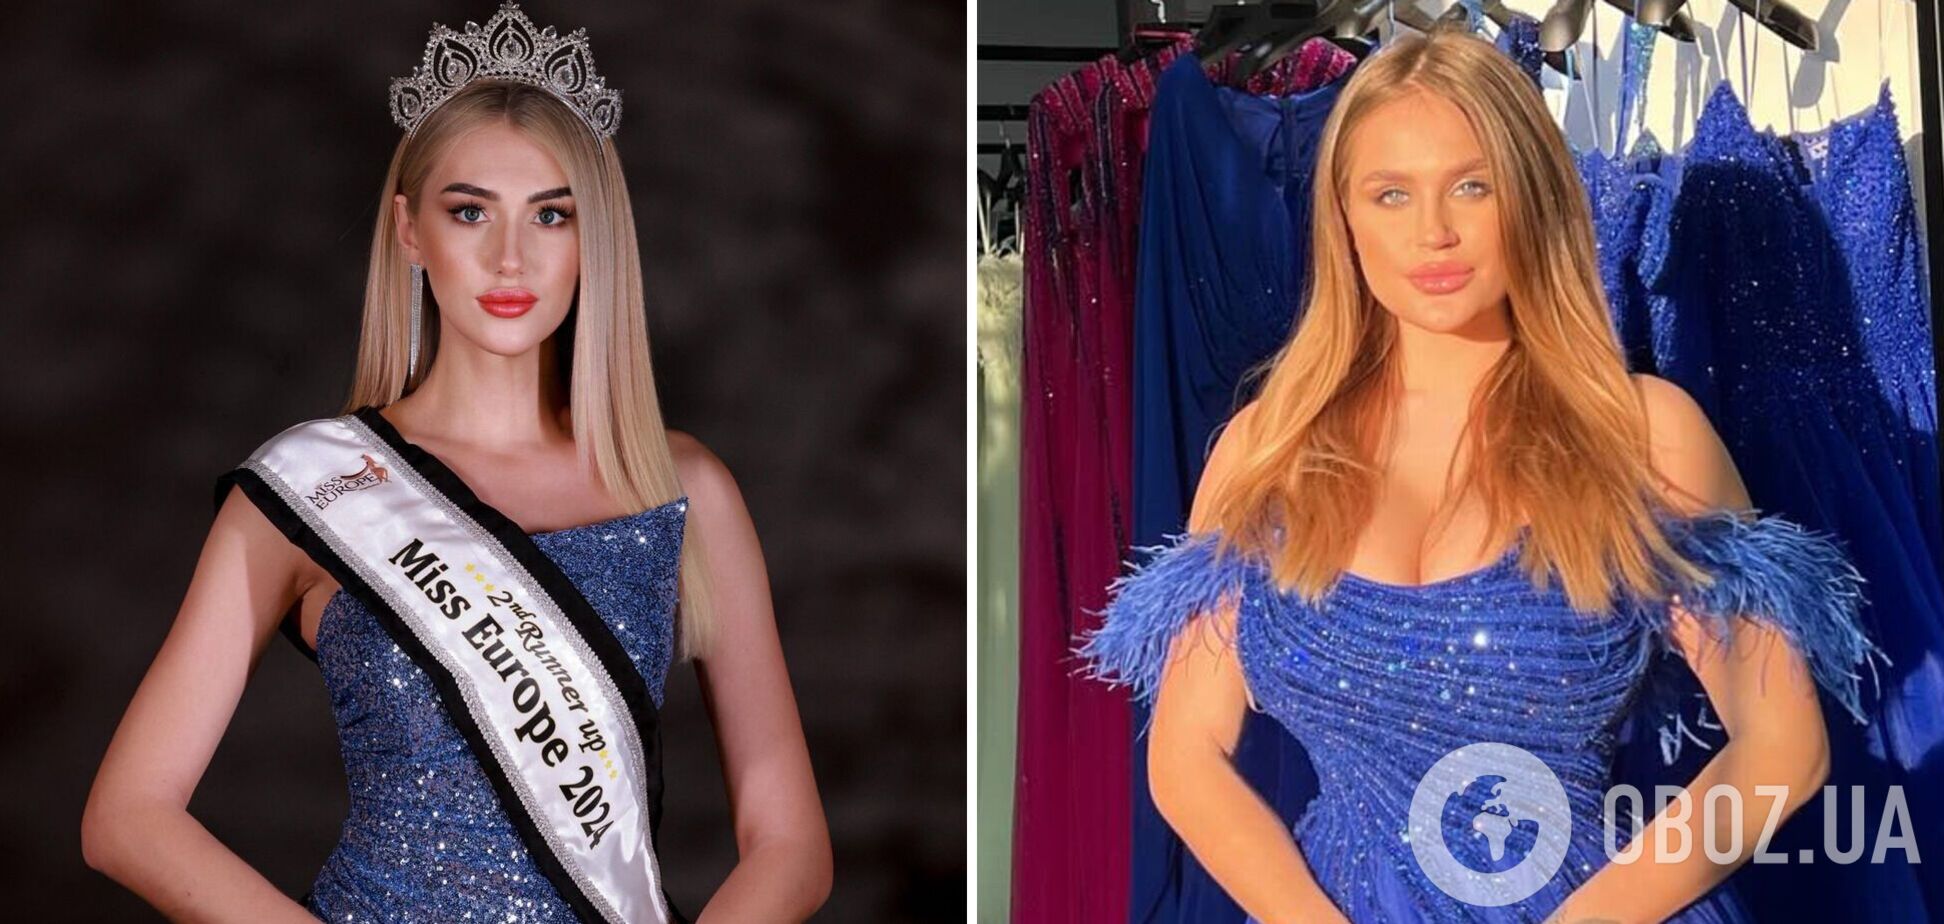 Беларуска попыталась оправдаться за нападение на украинку на 'Мисс Европа', но только подтвердила, что Милена Мельничук все сделала правильно